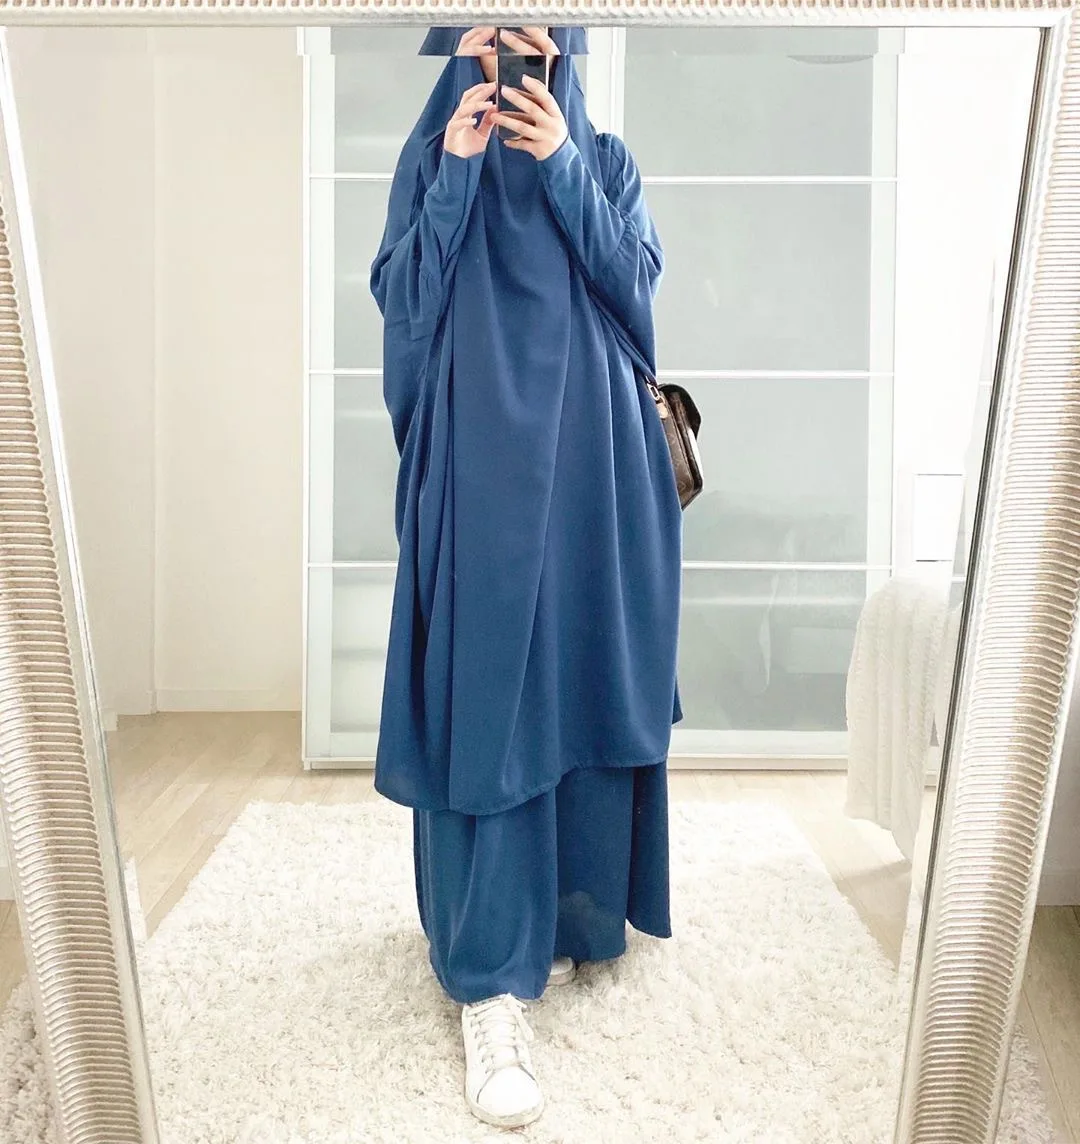 Модное платье с капюшоном, верхняя одежда, длинное платье цзилбаб, абайя, химар, Рамадан, юбка, комплекты, мусульманская одежда Niqab